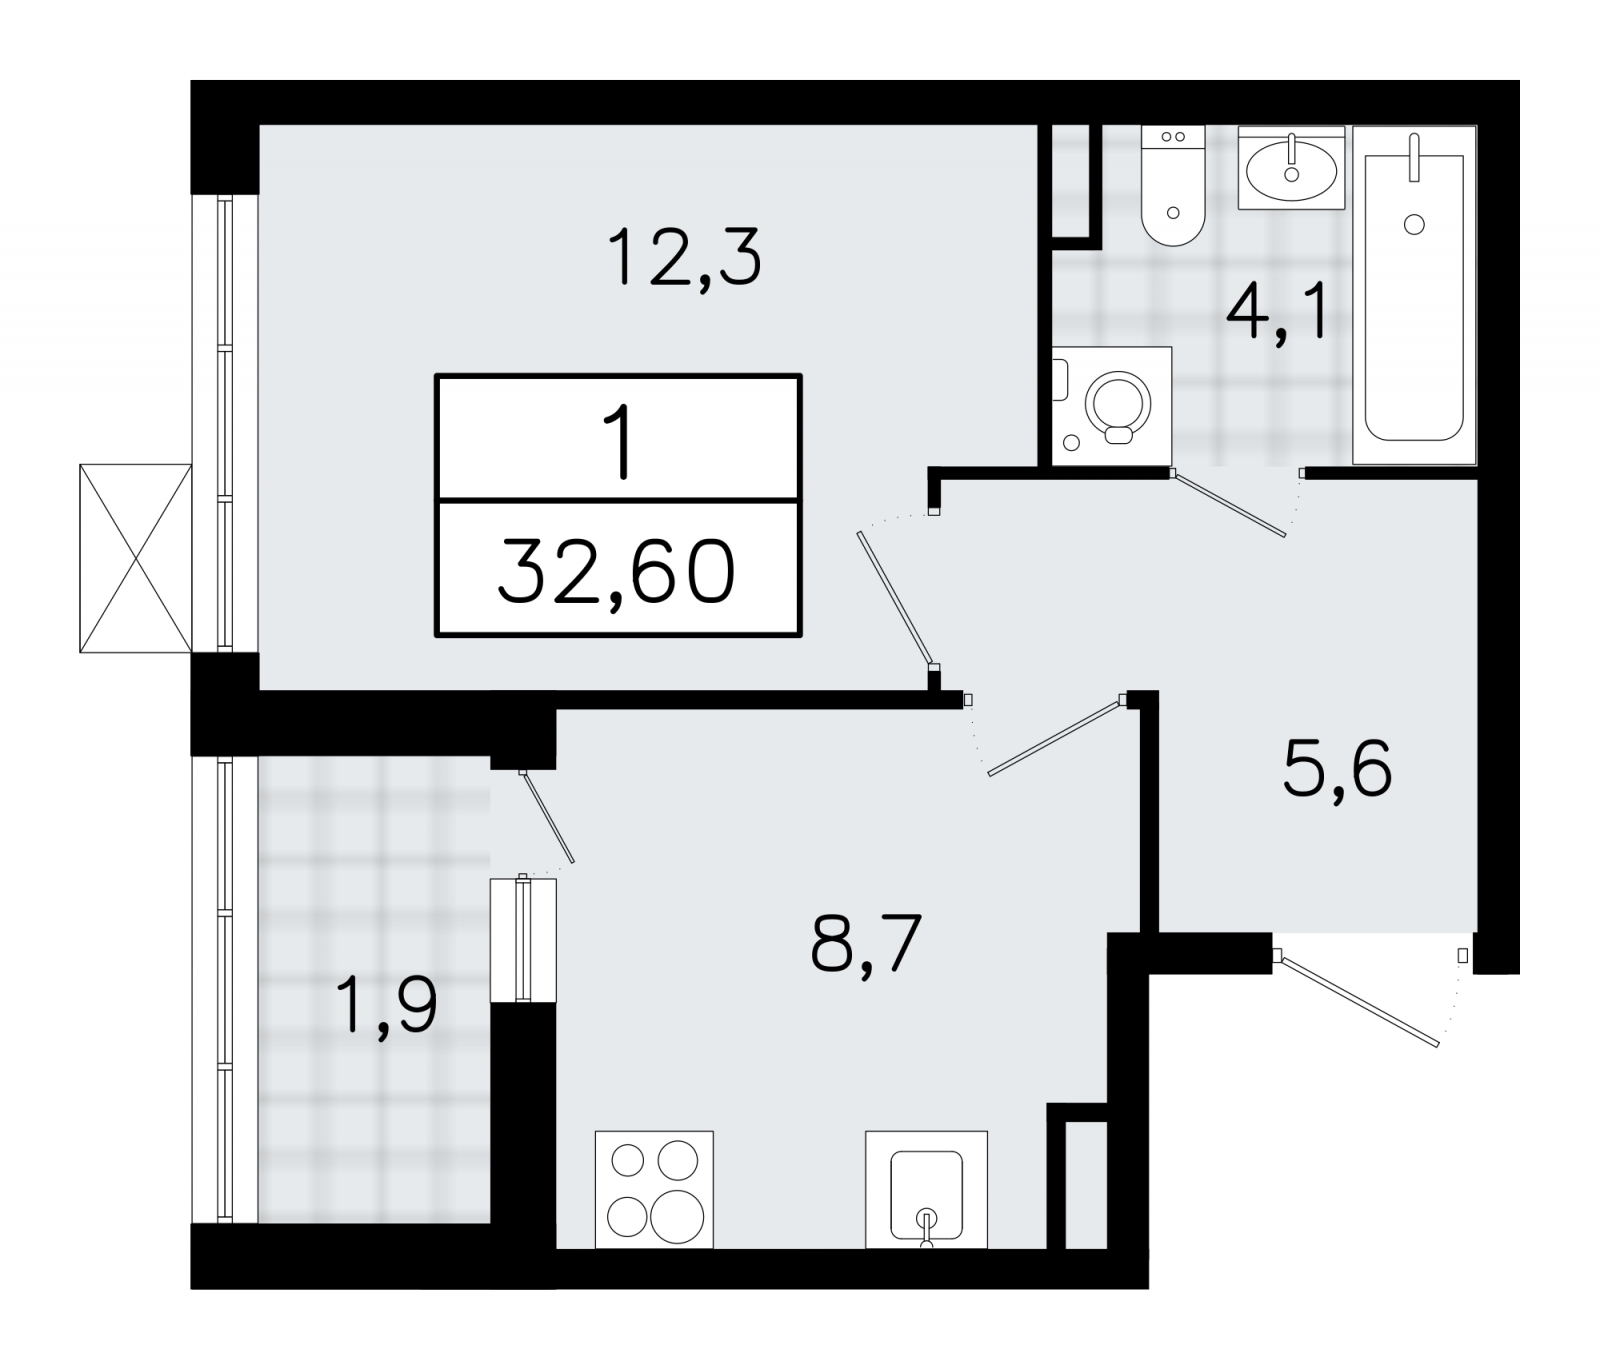 Продаю просторную 1-комнатную квартиру в новом ЖК